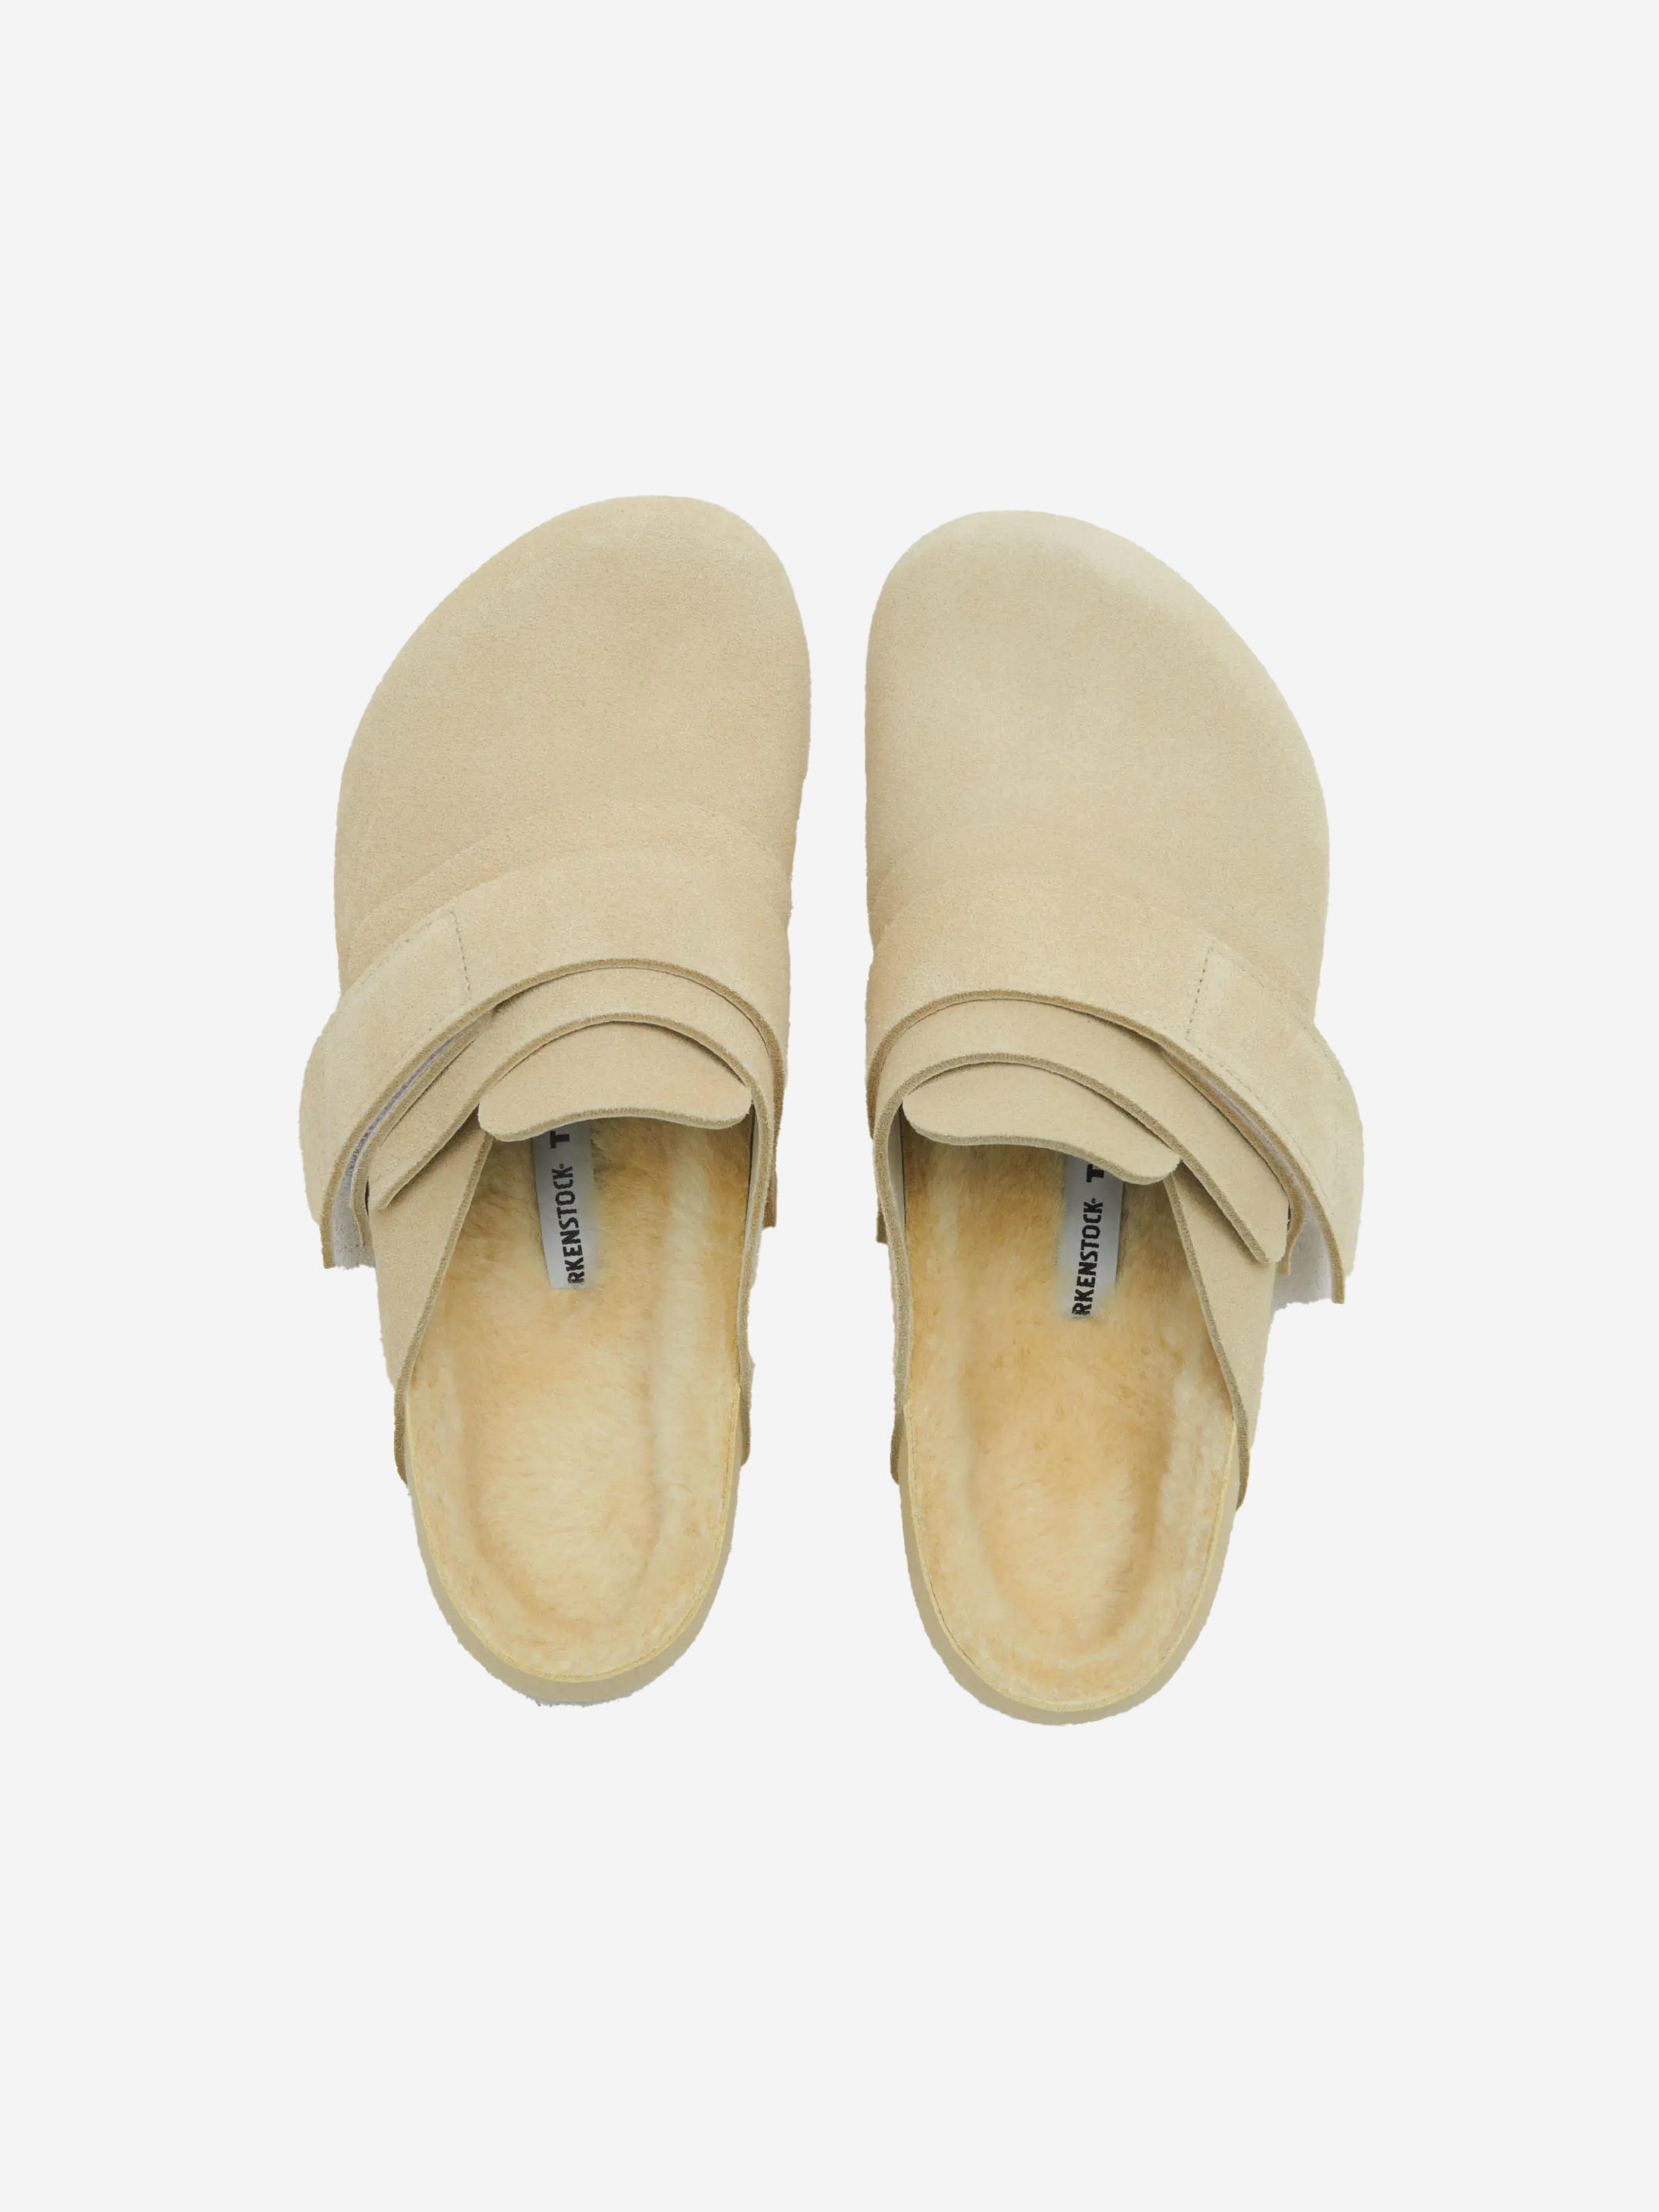 TEKLA x Birkenstock slippers